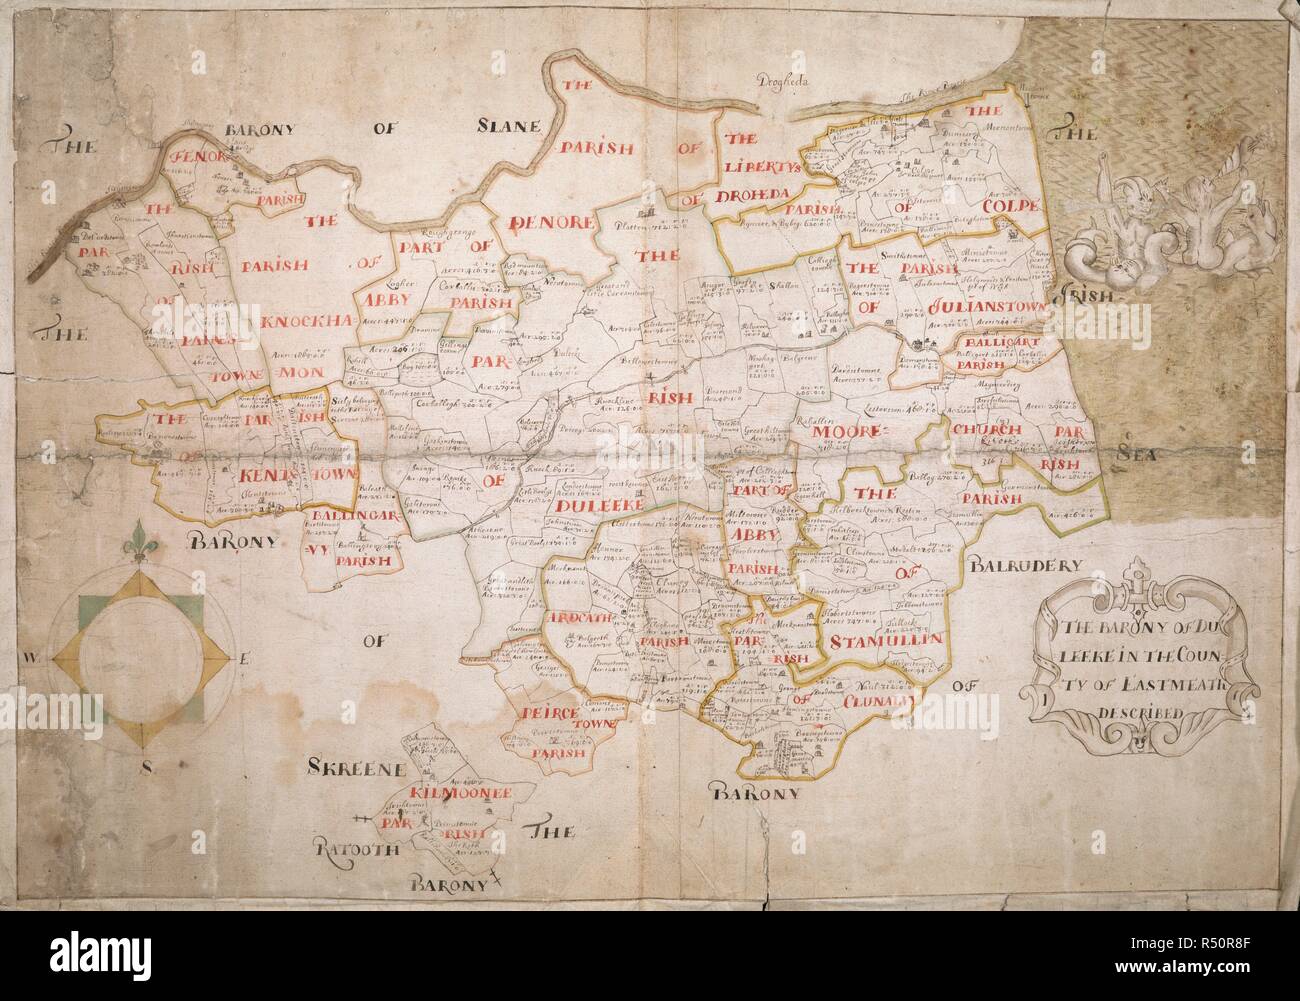 La Baronnie d'Duleeke dans le comté de Meath est [Leinster] Décrit', par un géomètre ; [1655-1656 ?]. Pas d'échelle étant donné. Le Nord en haut. Montre les limites des paroisses (en couleur) et townlands, avec des noms de lieux. Les rivières, les zones de marais et de la côte de la mer (avec un groupe de monstres marins et de figures humaines) sont indiqués, et certains bâtiments illustré de représentations imagées. Cartouche décoré de volutes et d'une tête grotesque. Rose des vents. Monté sur une grande feuille de papier fait main, usé sur les bords. 50 x 71cm. . 'La Baronnie d'Duleeke dans le comté de Meath est [Leinster] décrit, par un unidenti» Banque D'Images